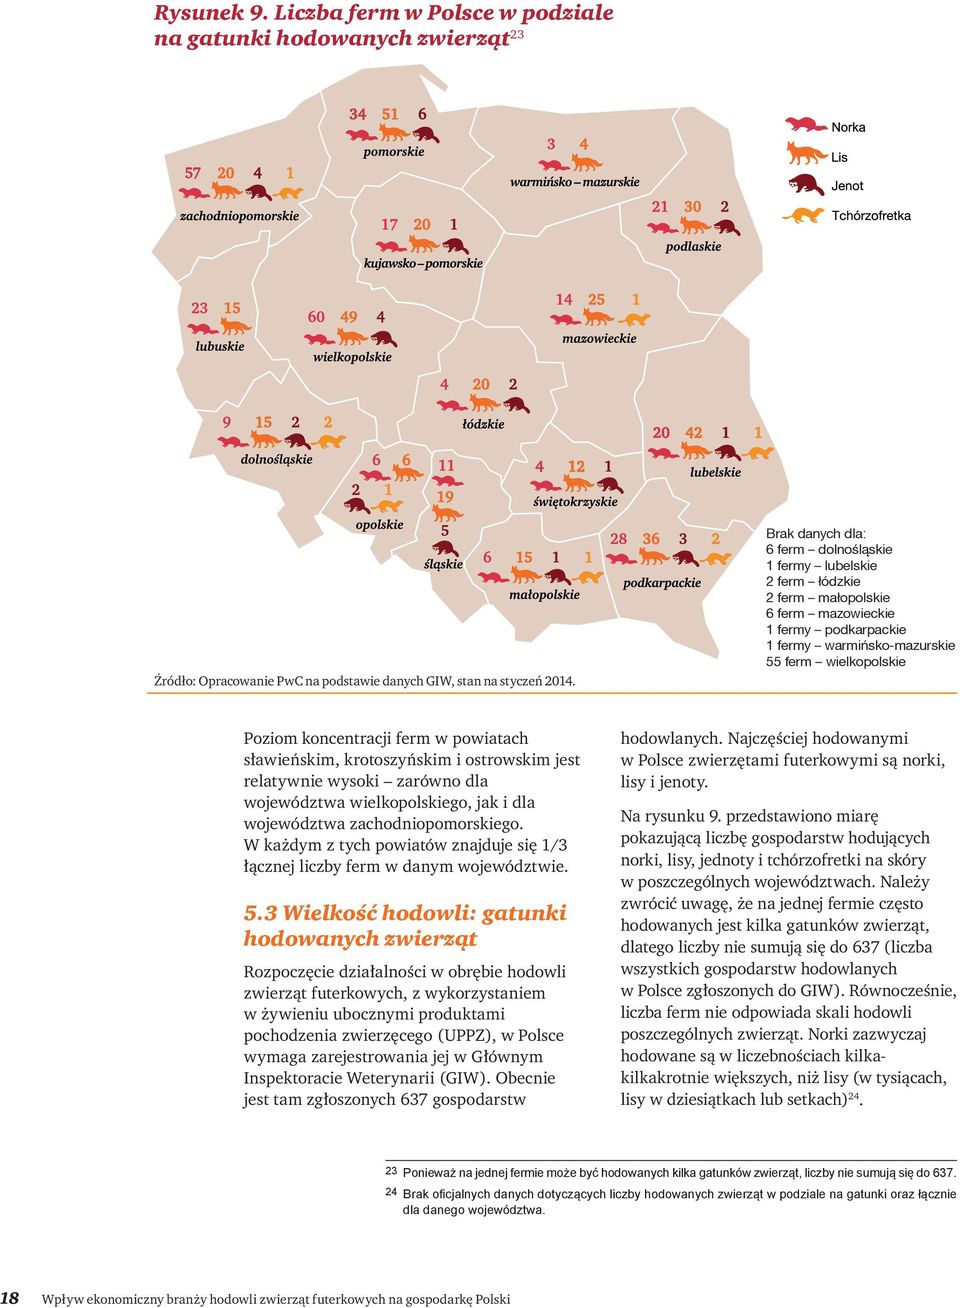 ferm w powiatach sławieńskim, krotoszyńskim i ostrowskim jest relatywnie wysoki zarówno dla województwa wielkopolskiego, jak i dla województwa zachodniopomorskiego.